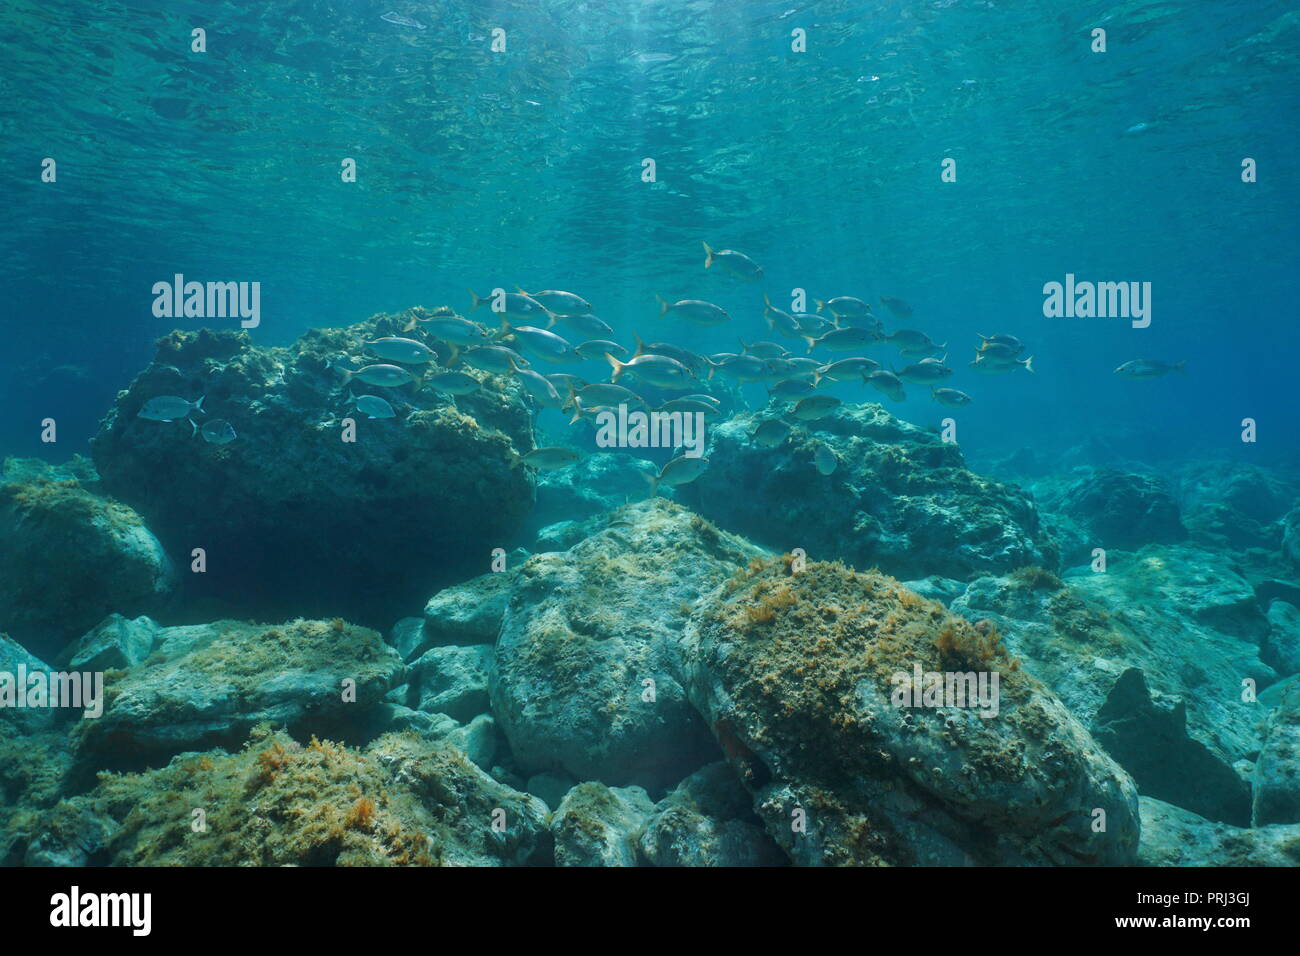 L'École de poissons marins sous-marine entre fond et surface de l'eau dans la mer Méditerranée Banque D'Images